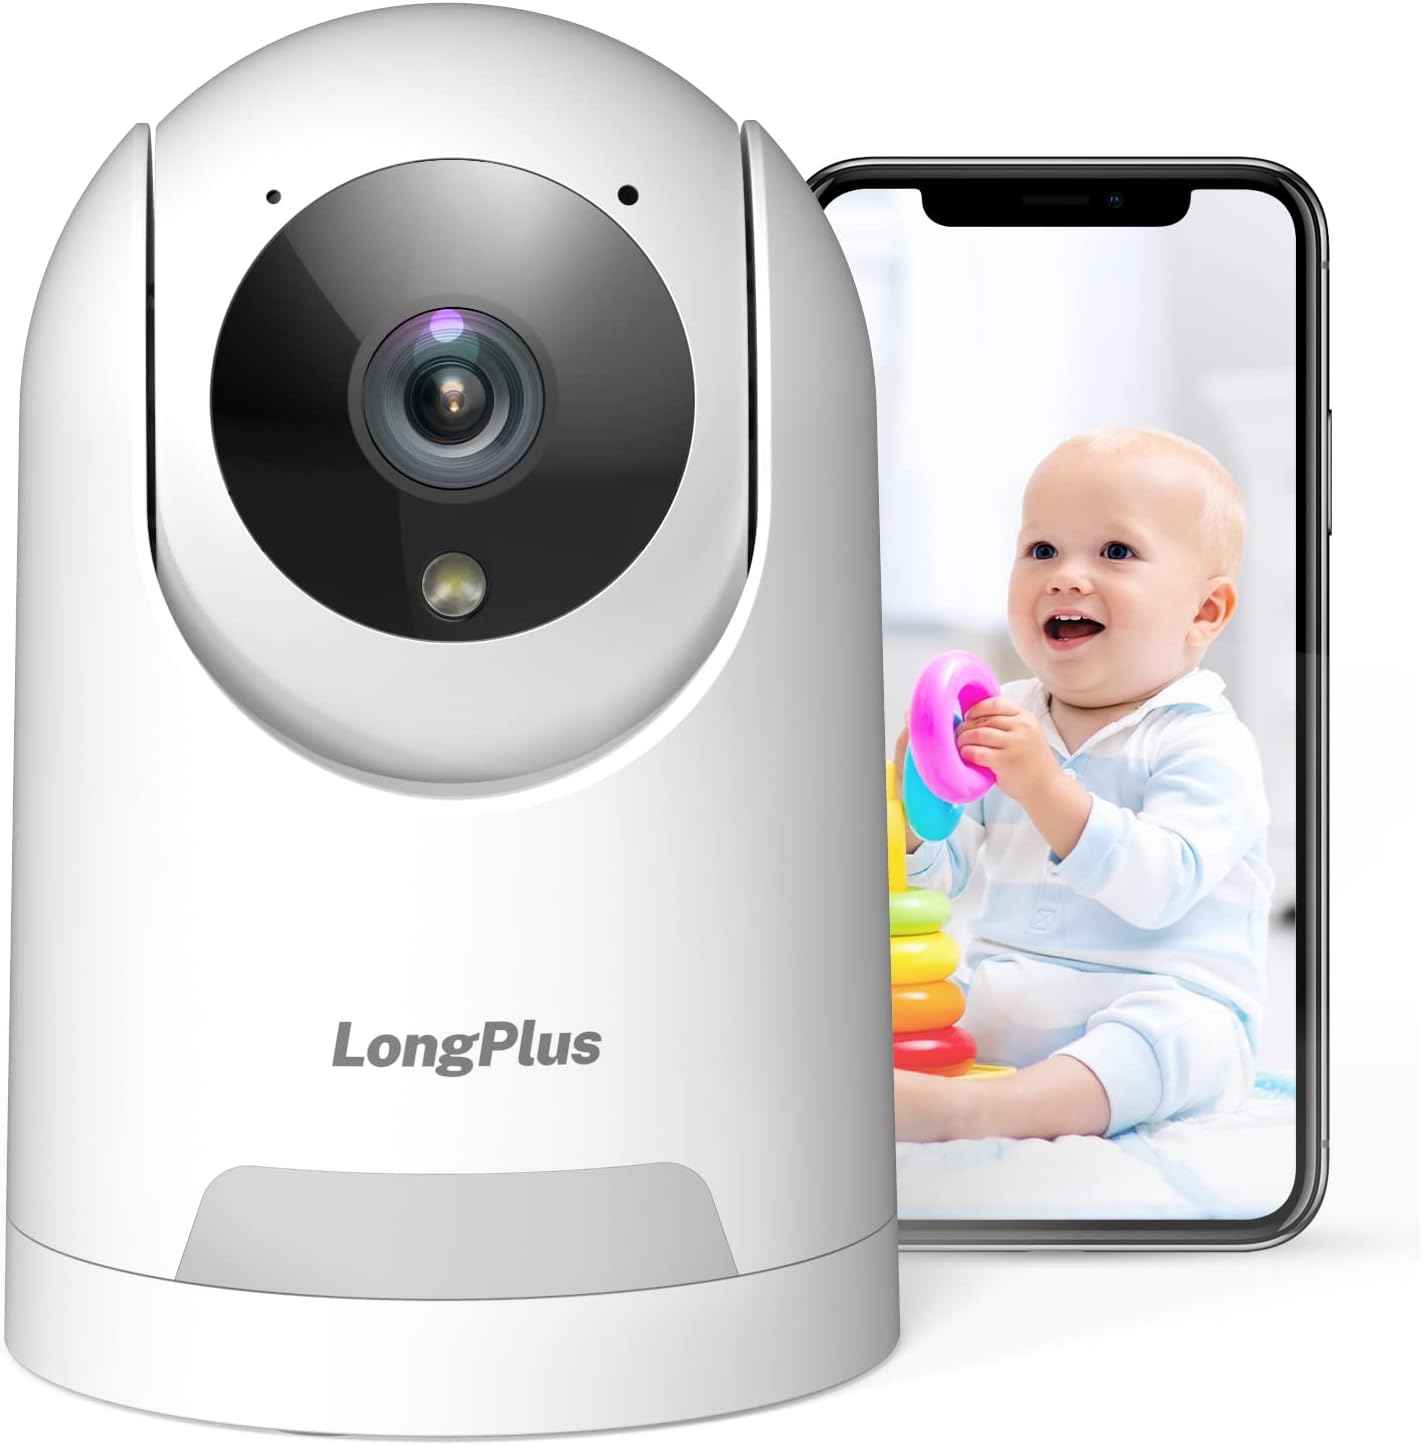 LongPlus Indoor Security Camera Review